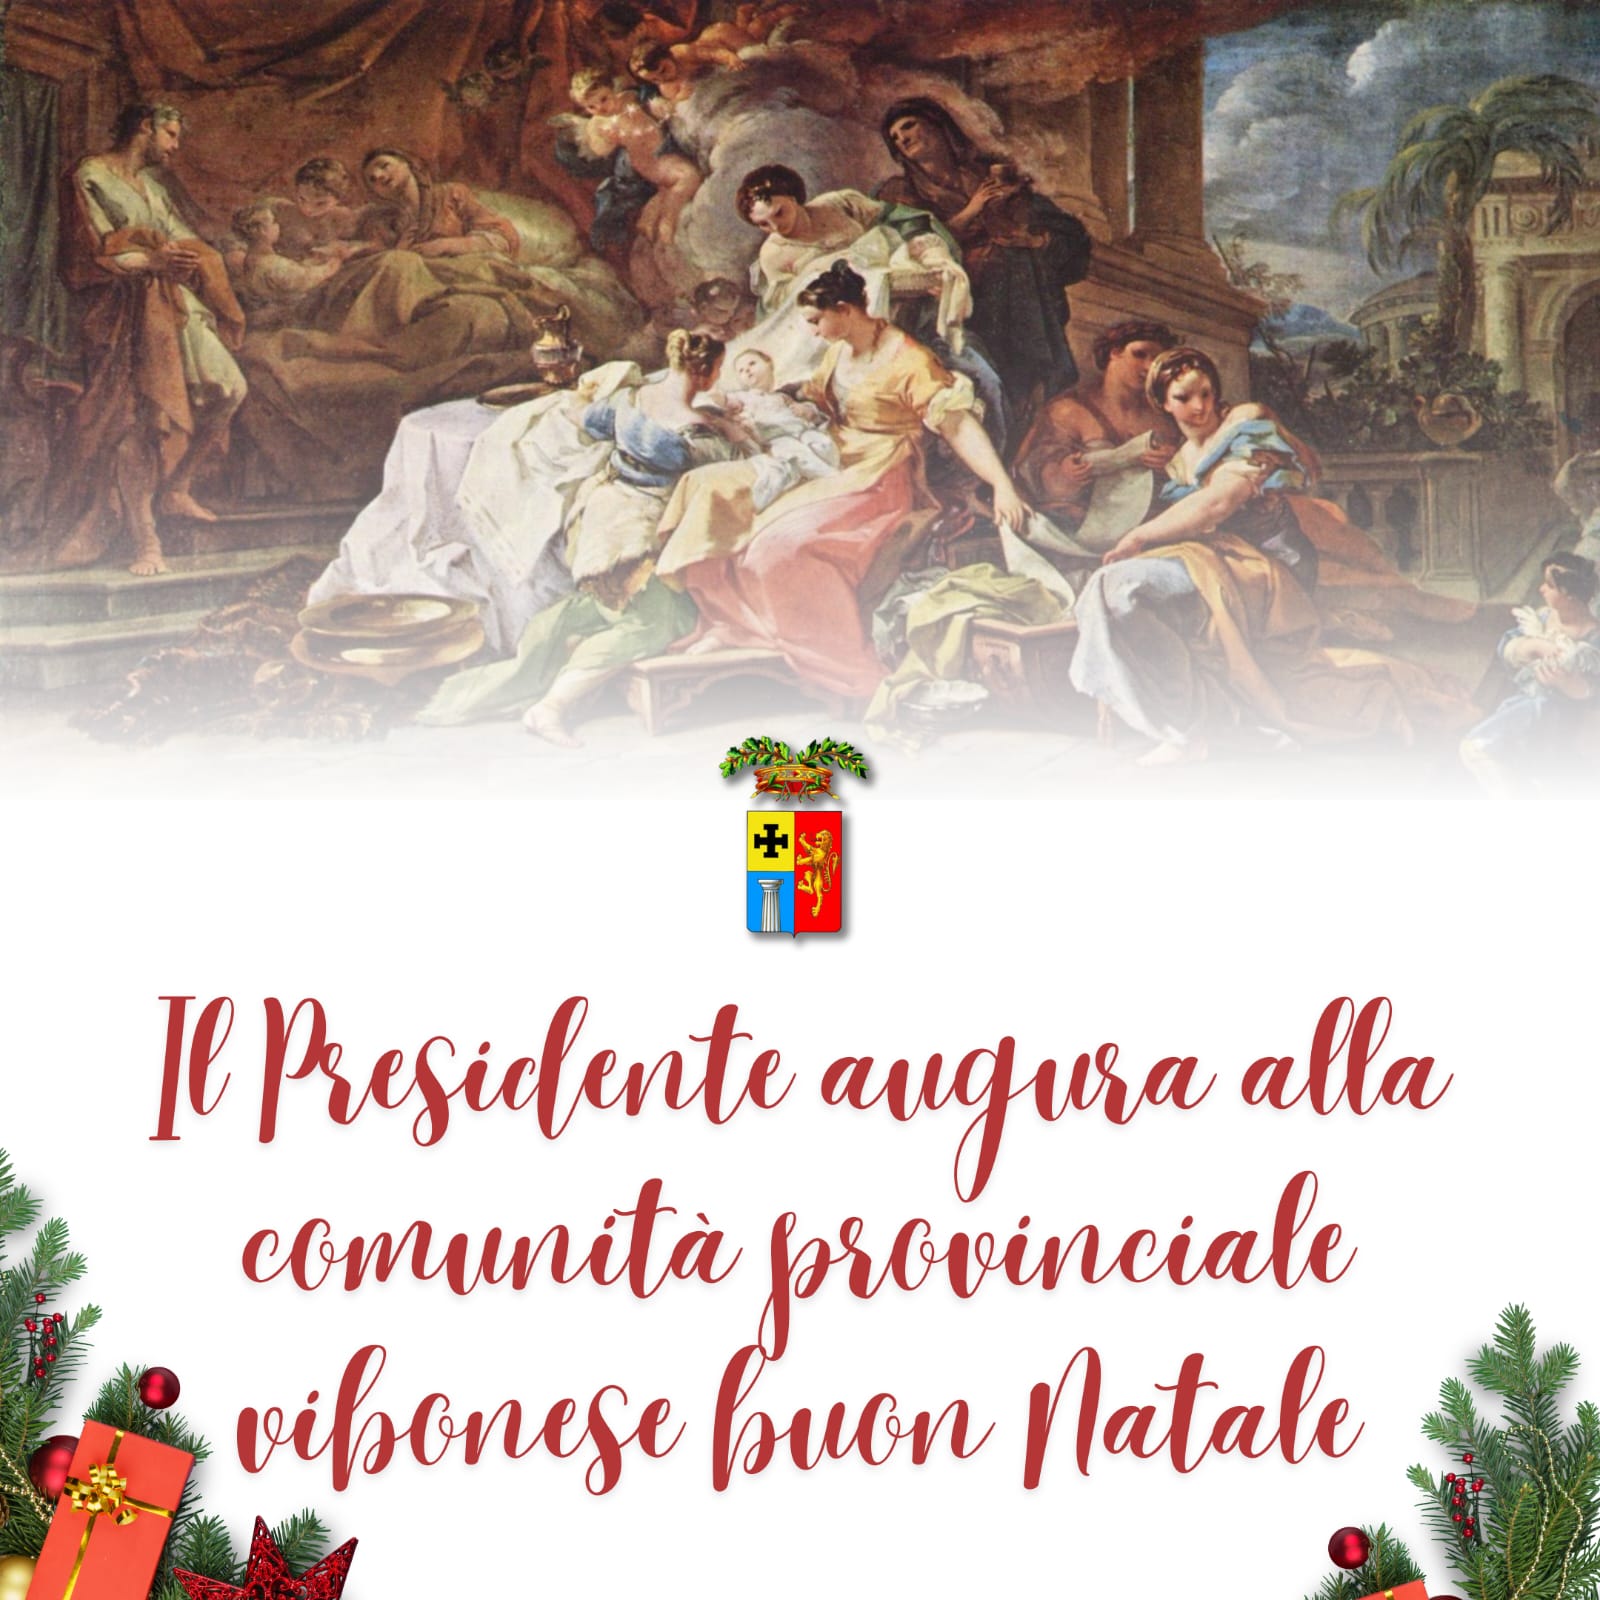 Buon Natale a tutta la comunità provinciale vibonese